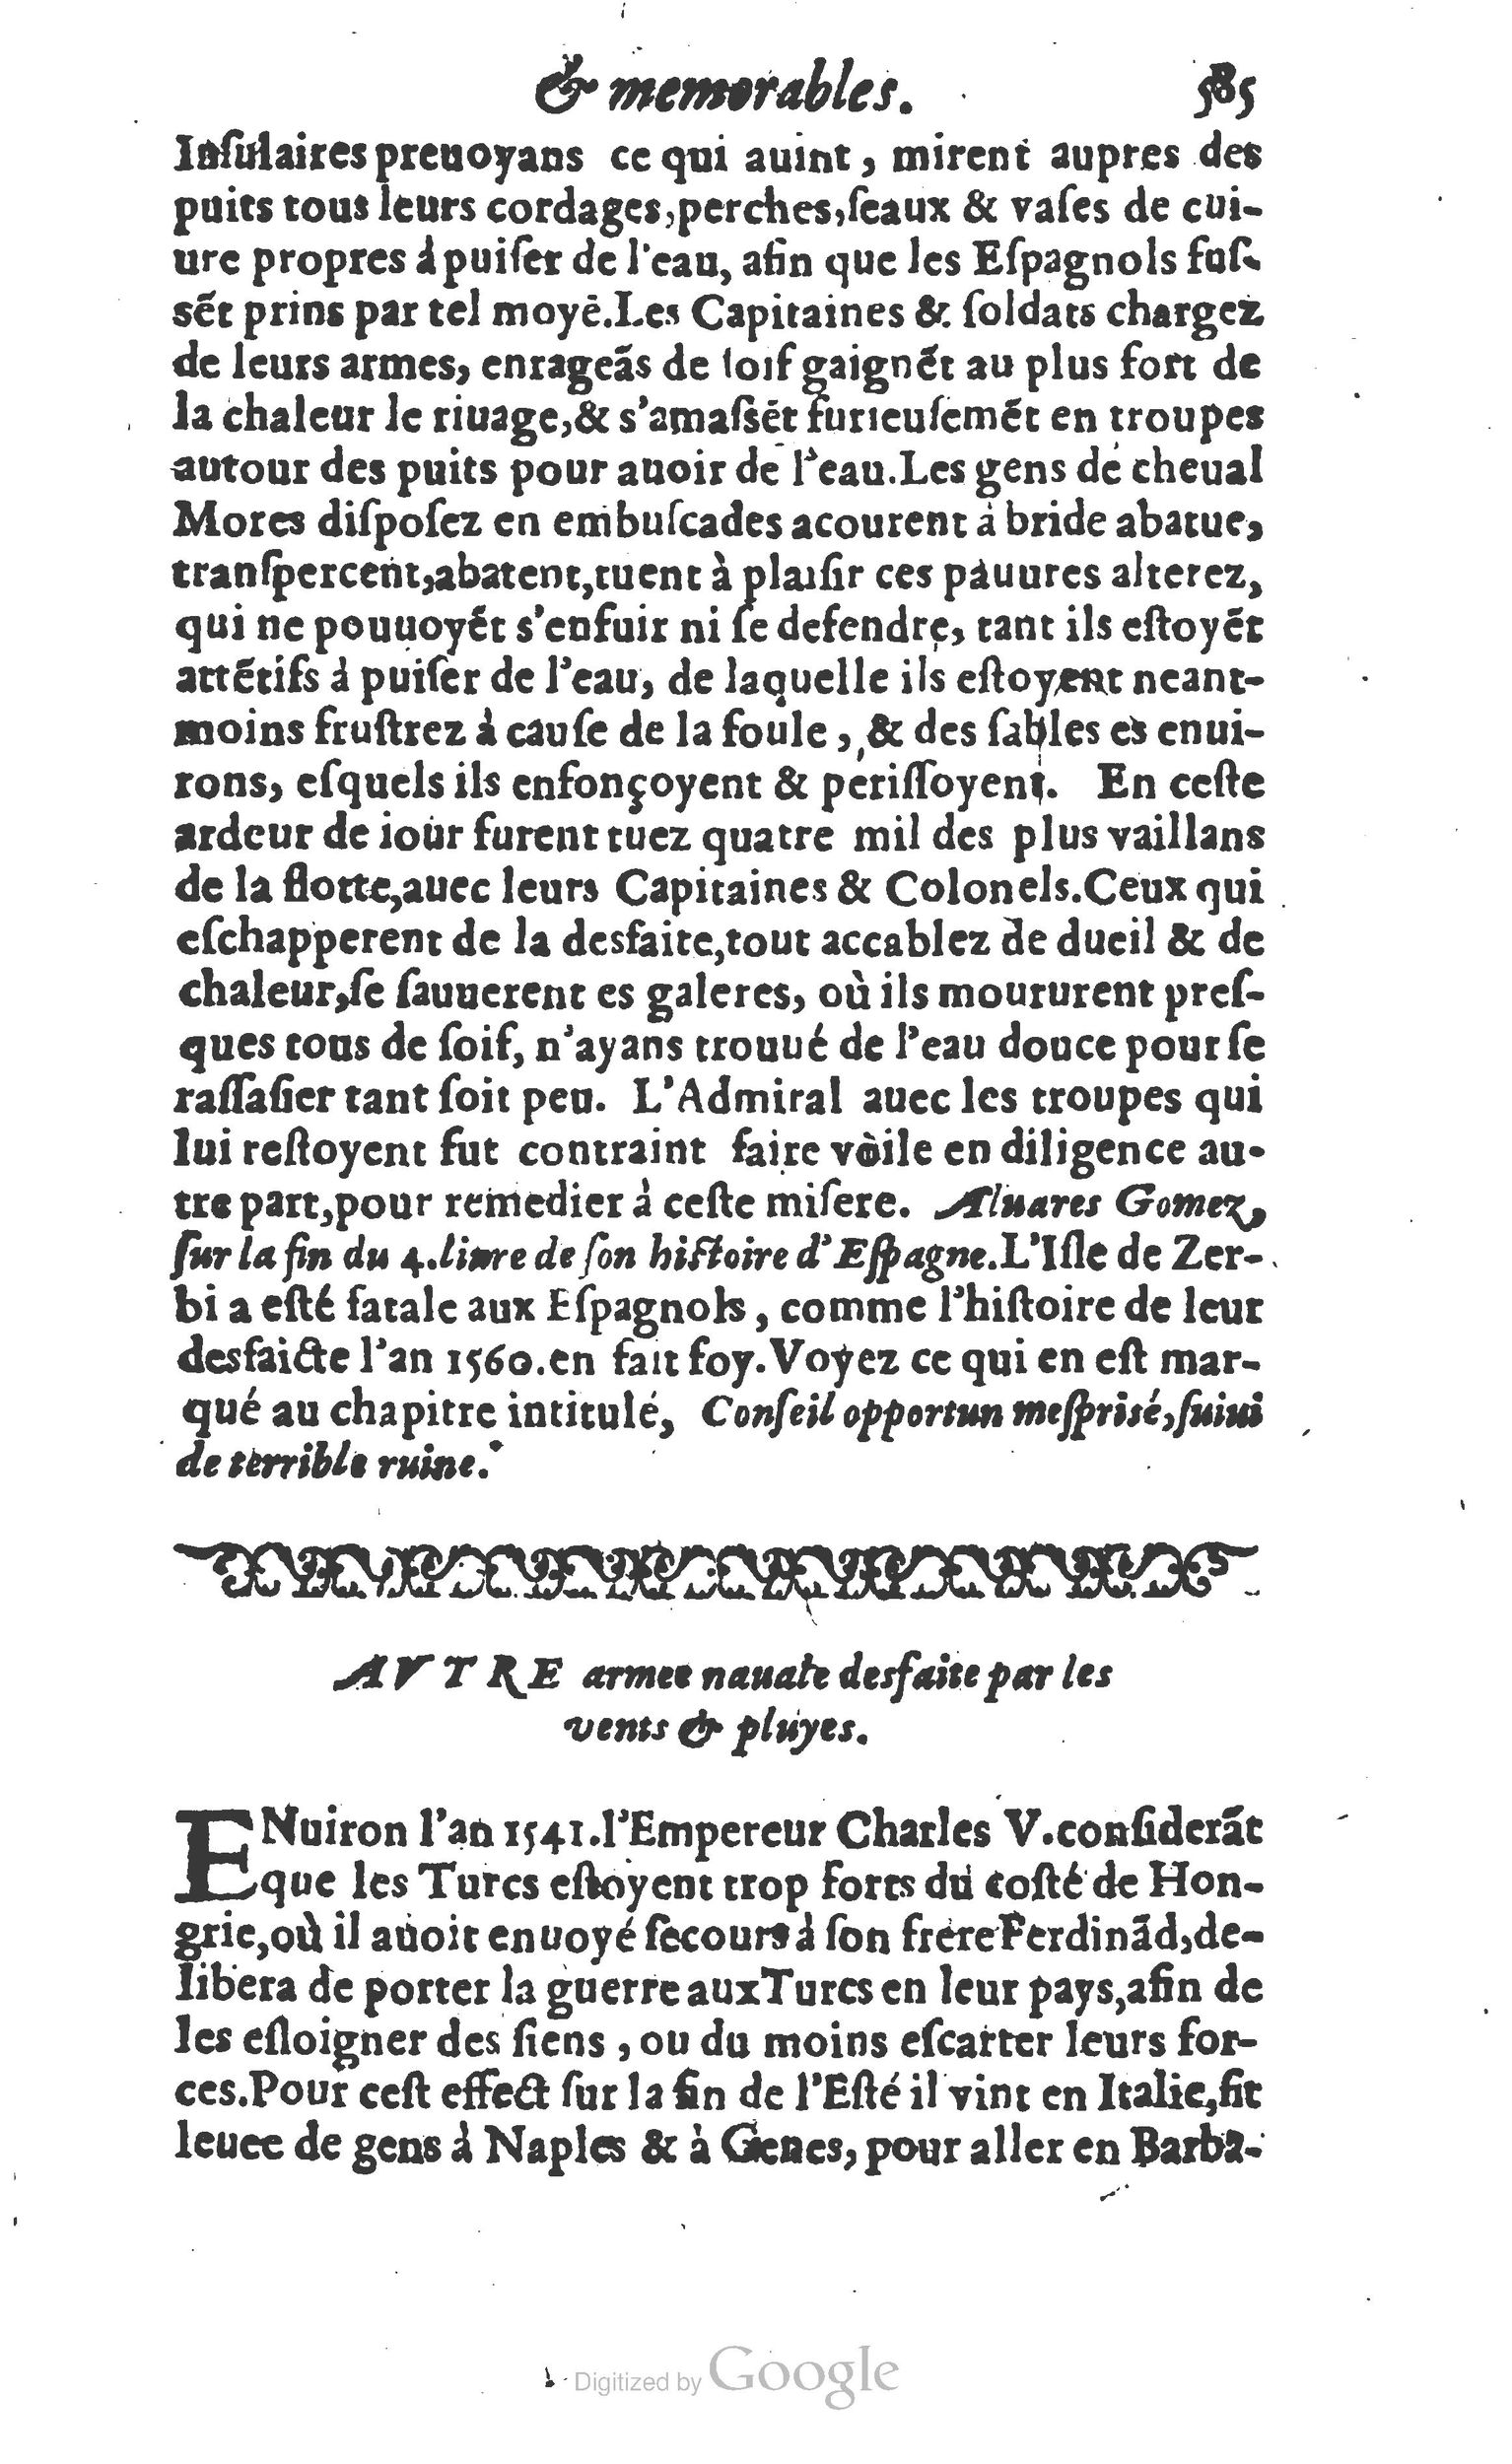 1610 Trésor d’histoires admirables et mémorables de nostre temps Marceau Princeton_Page_0606.jpg